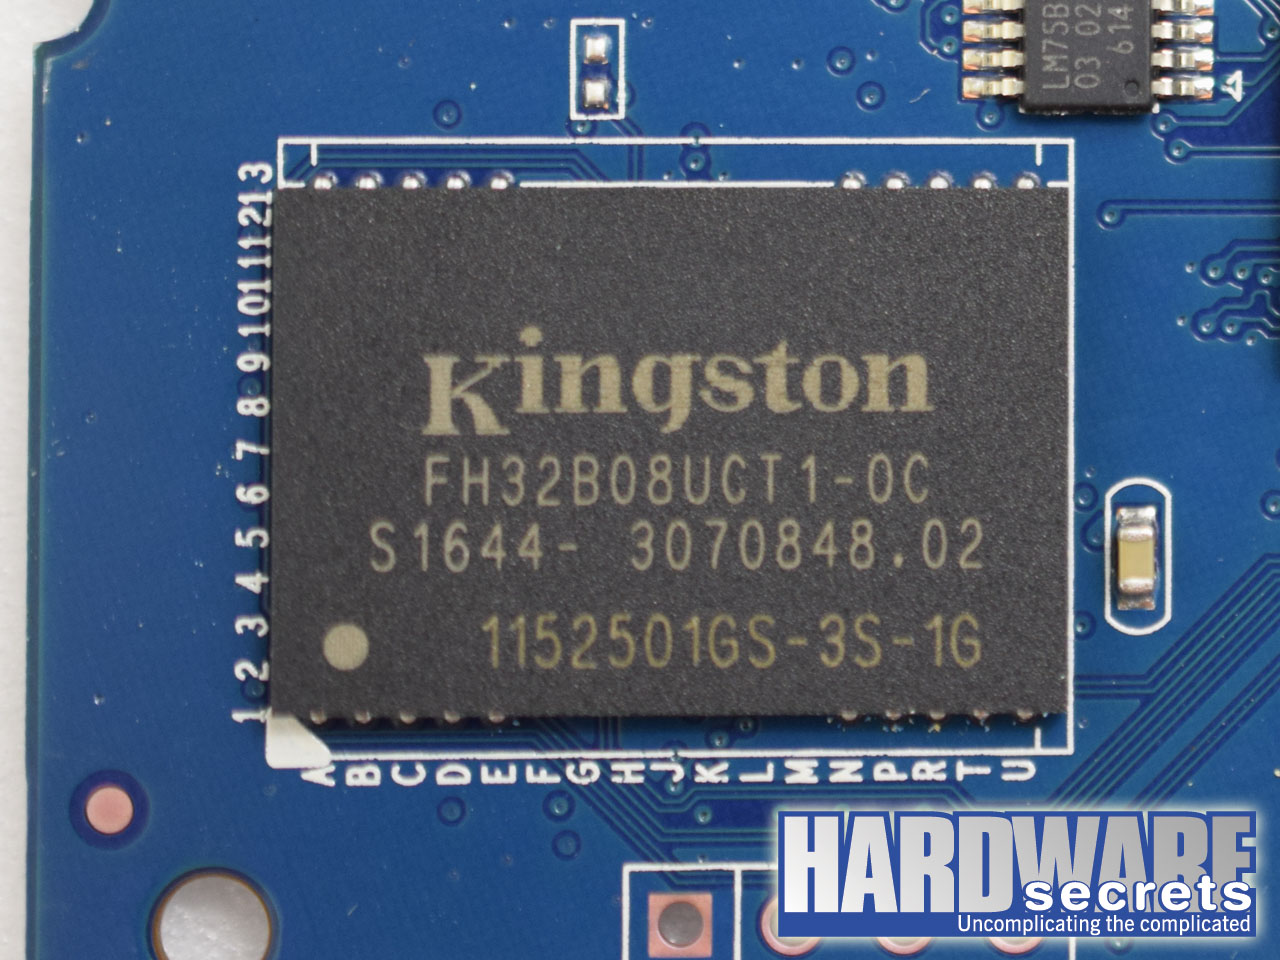 Kingston A400 120 GiB SSD Review - Hardware Secrets